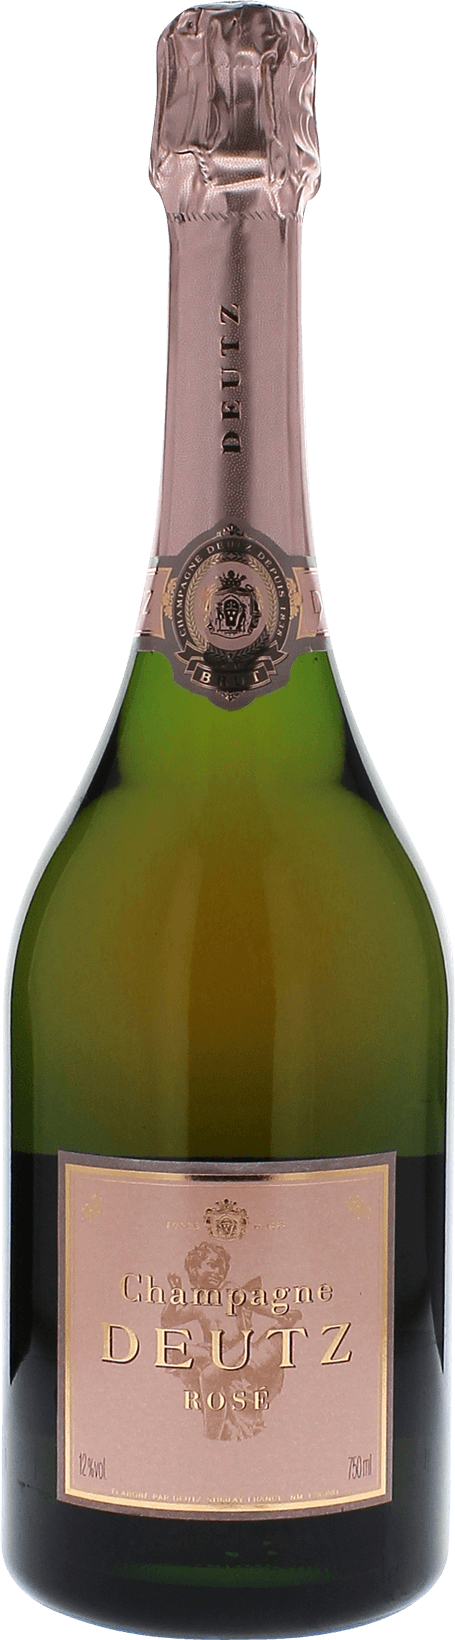 Deutz brut ros 2014  DEUTZ, Champagne